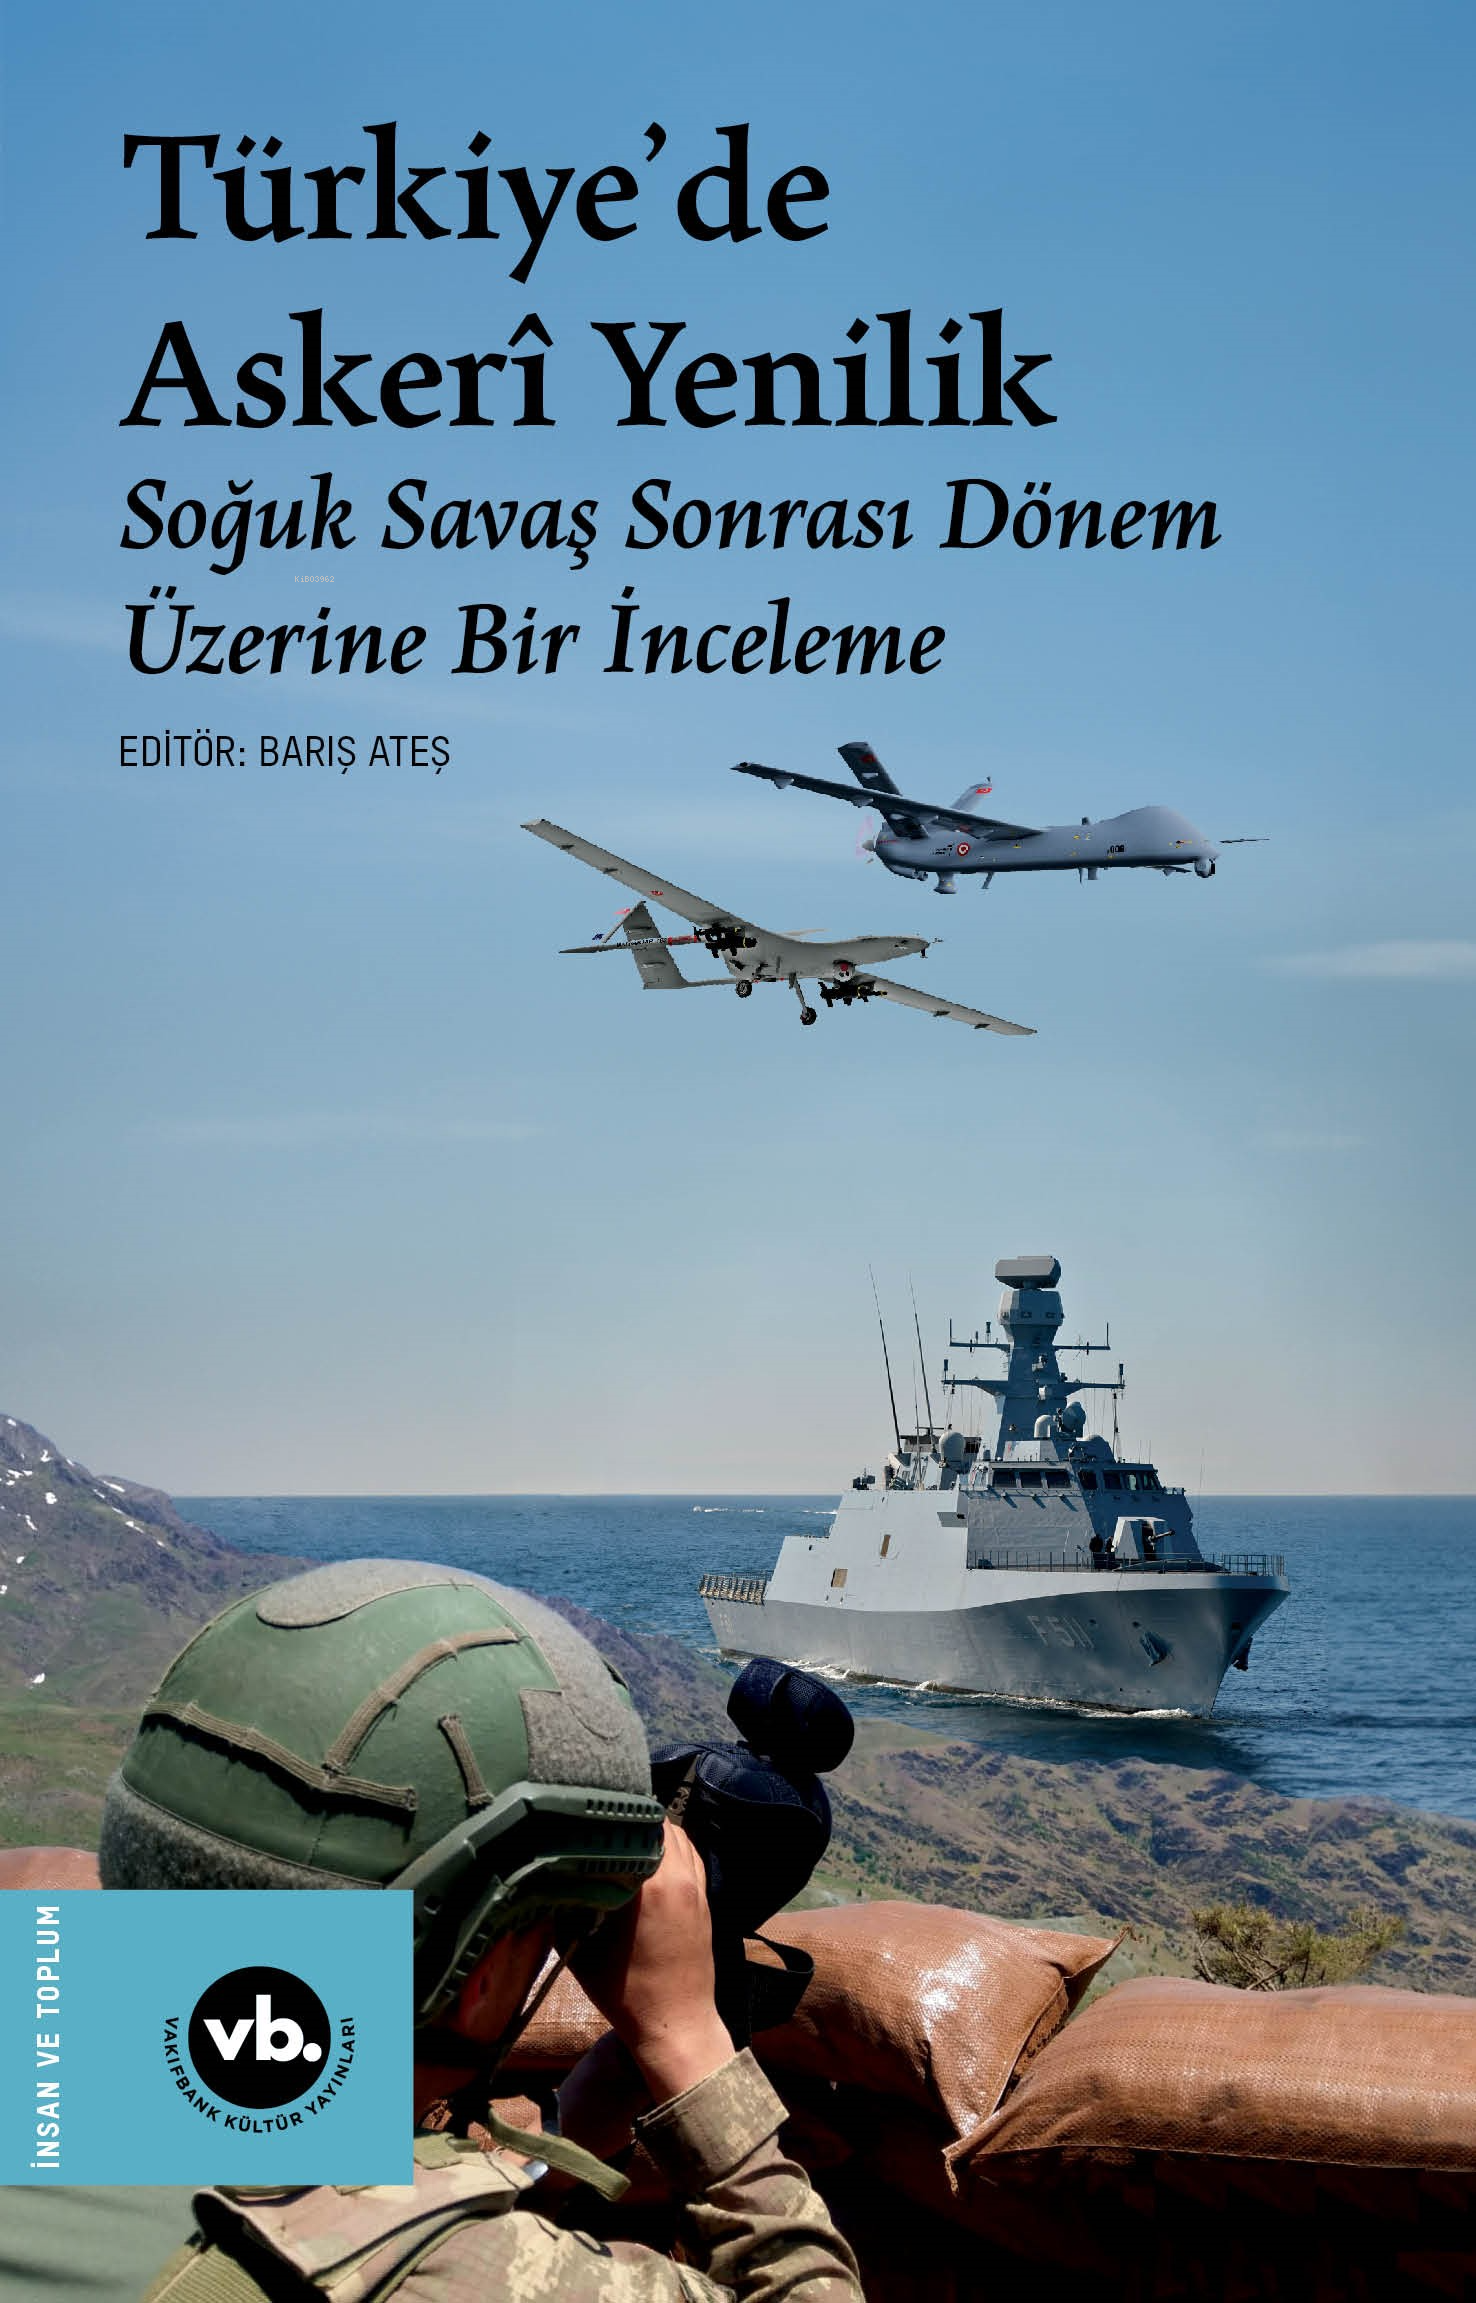 Türkiye’de Askerî Yenilik ;Soğuk Savaş Sonrası Dönem Üzerine Bir İnceleme